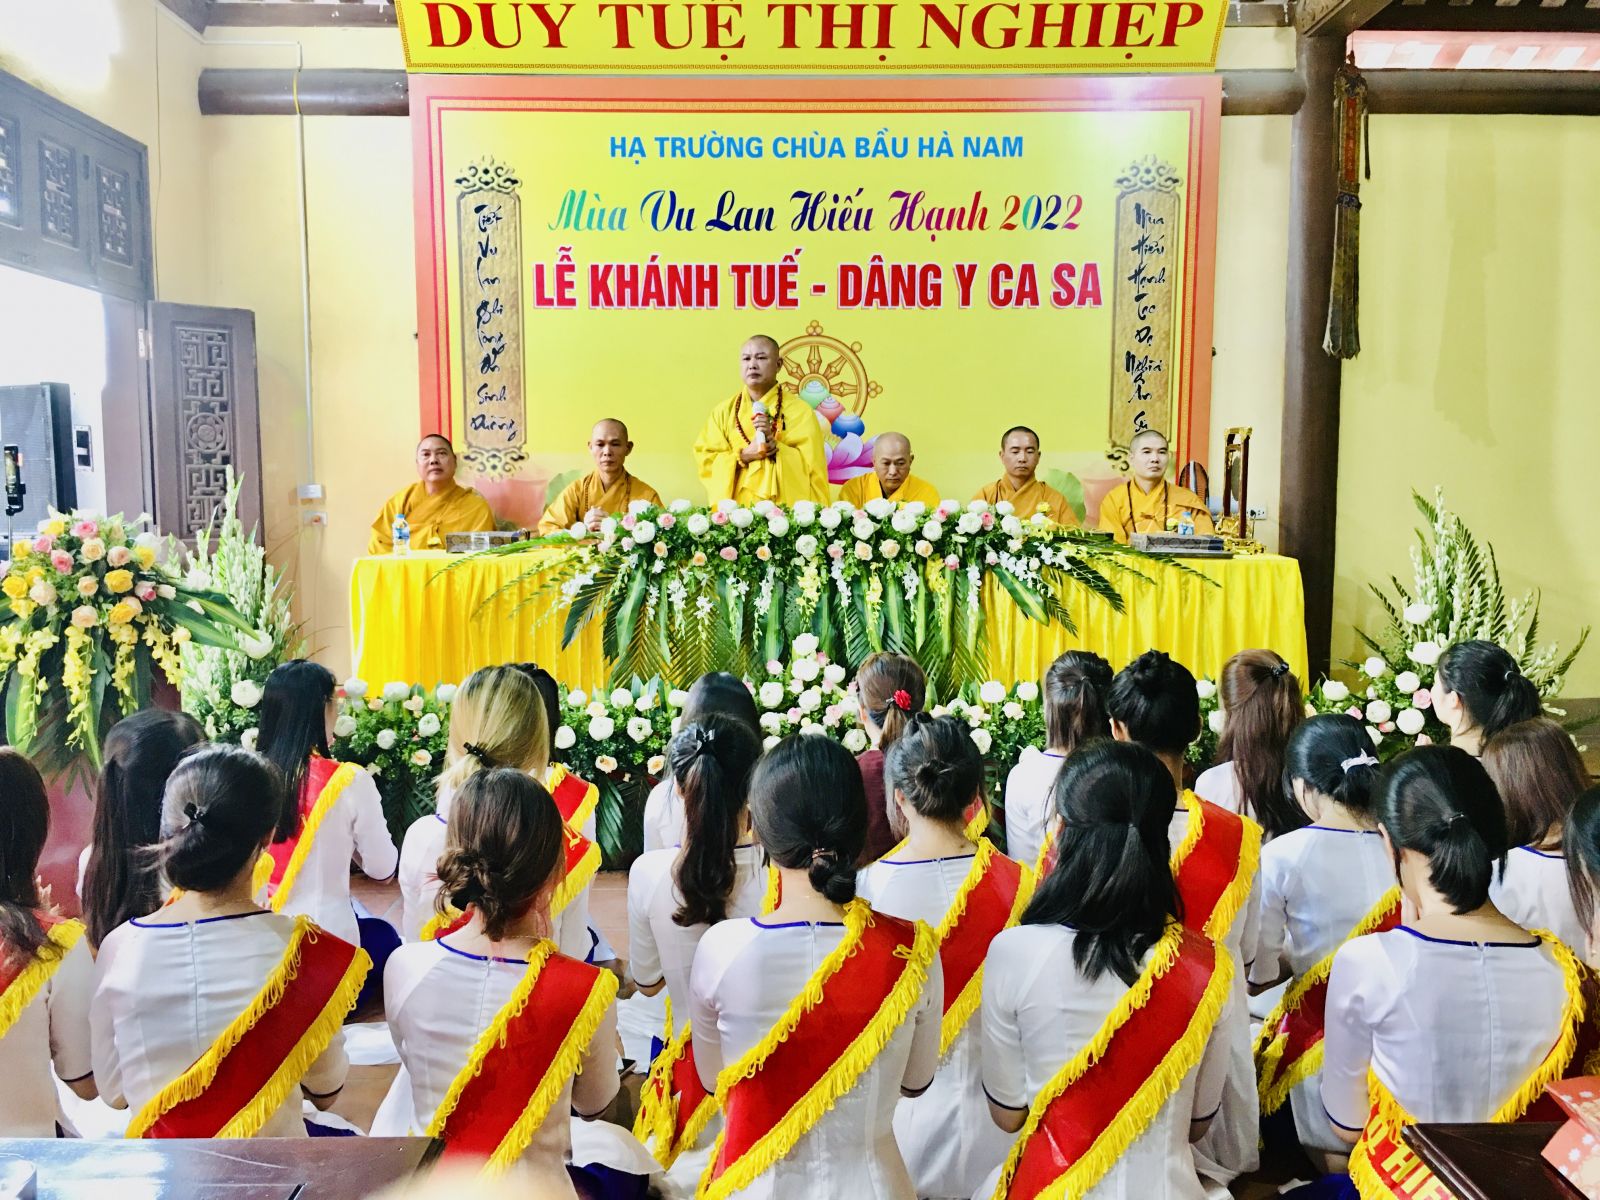 Trường Hạ Chùa Bầu, Phủ Lý Hà Nam diễn ra đại lễ dâng y Ca Sa, lễ Khánh Tuế.